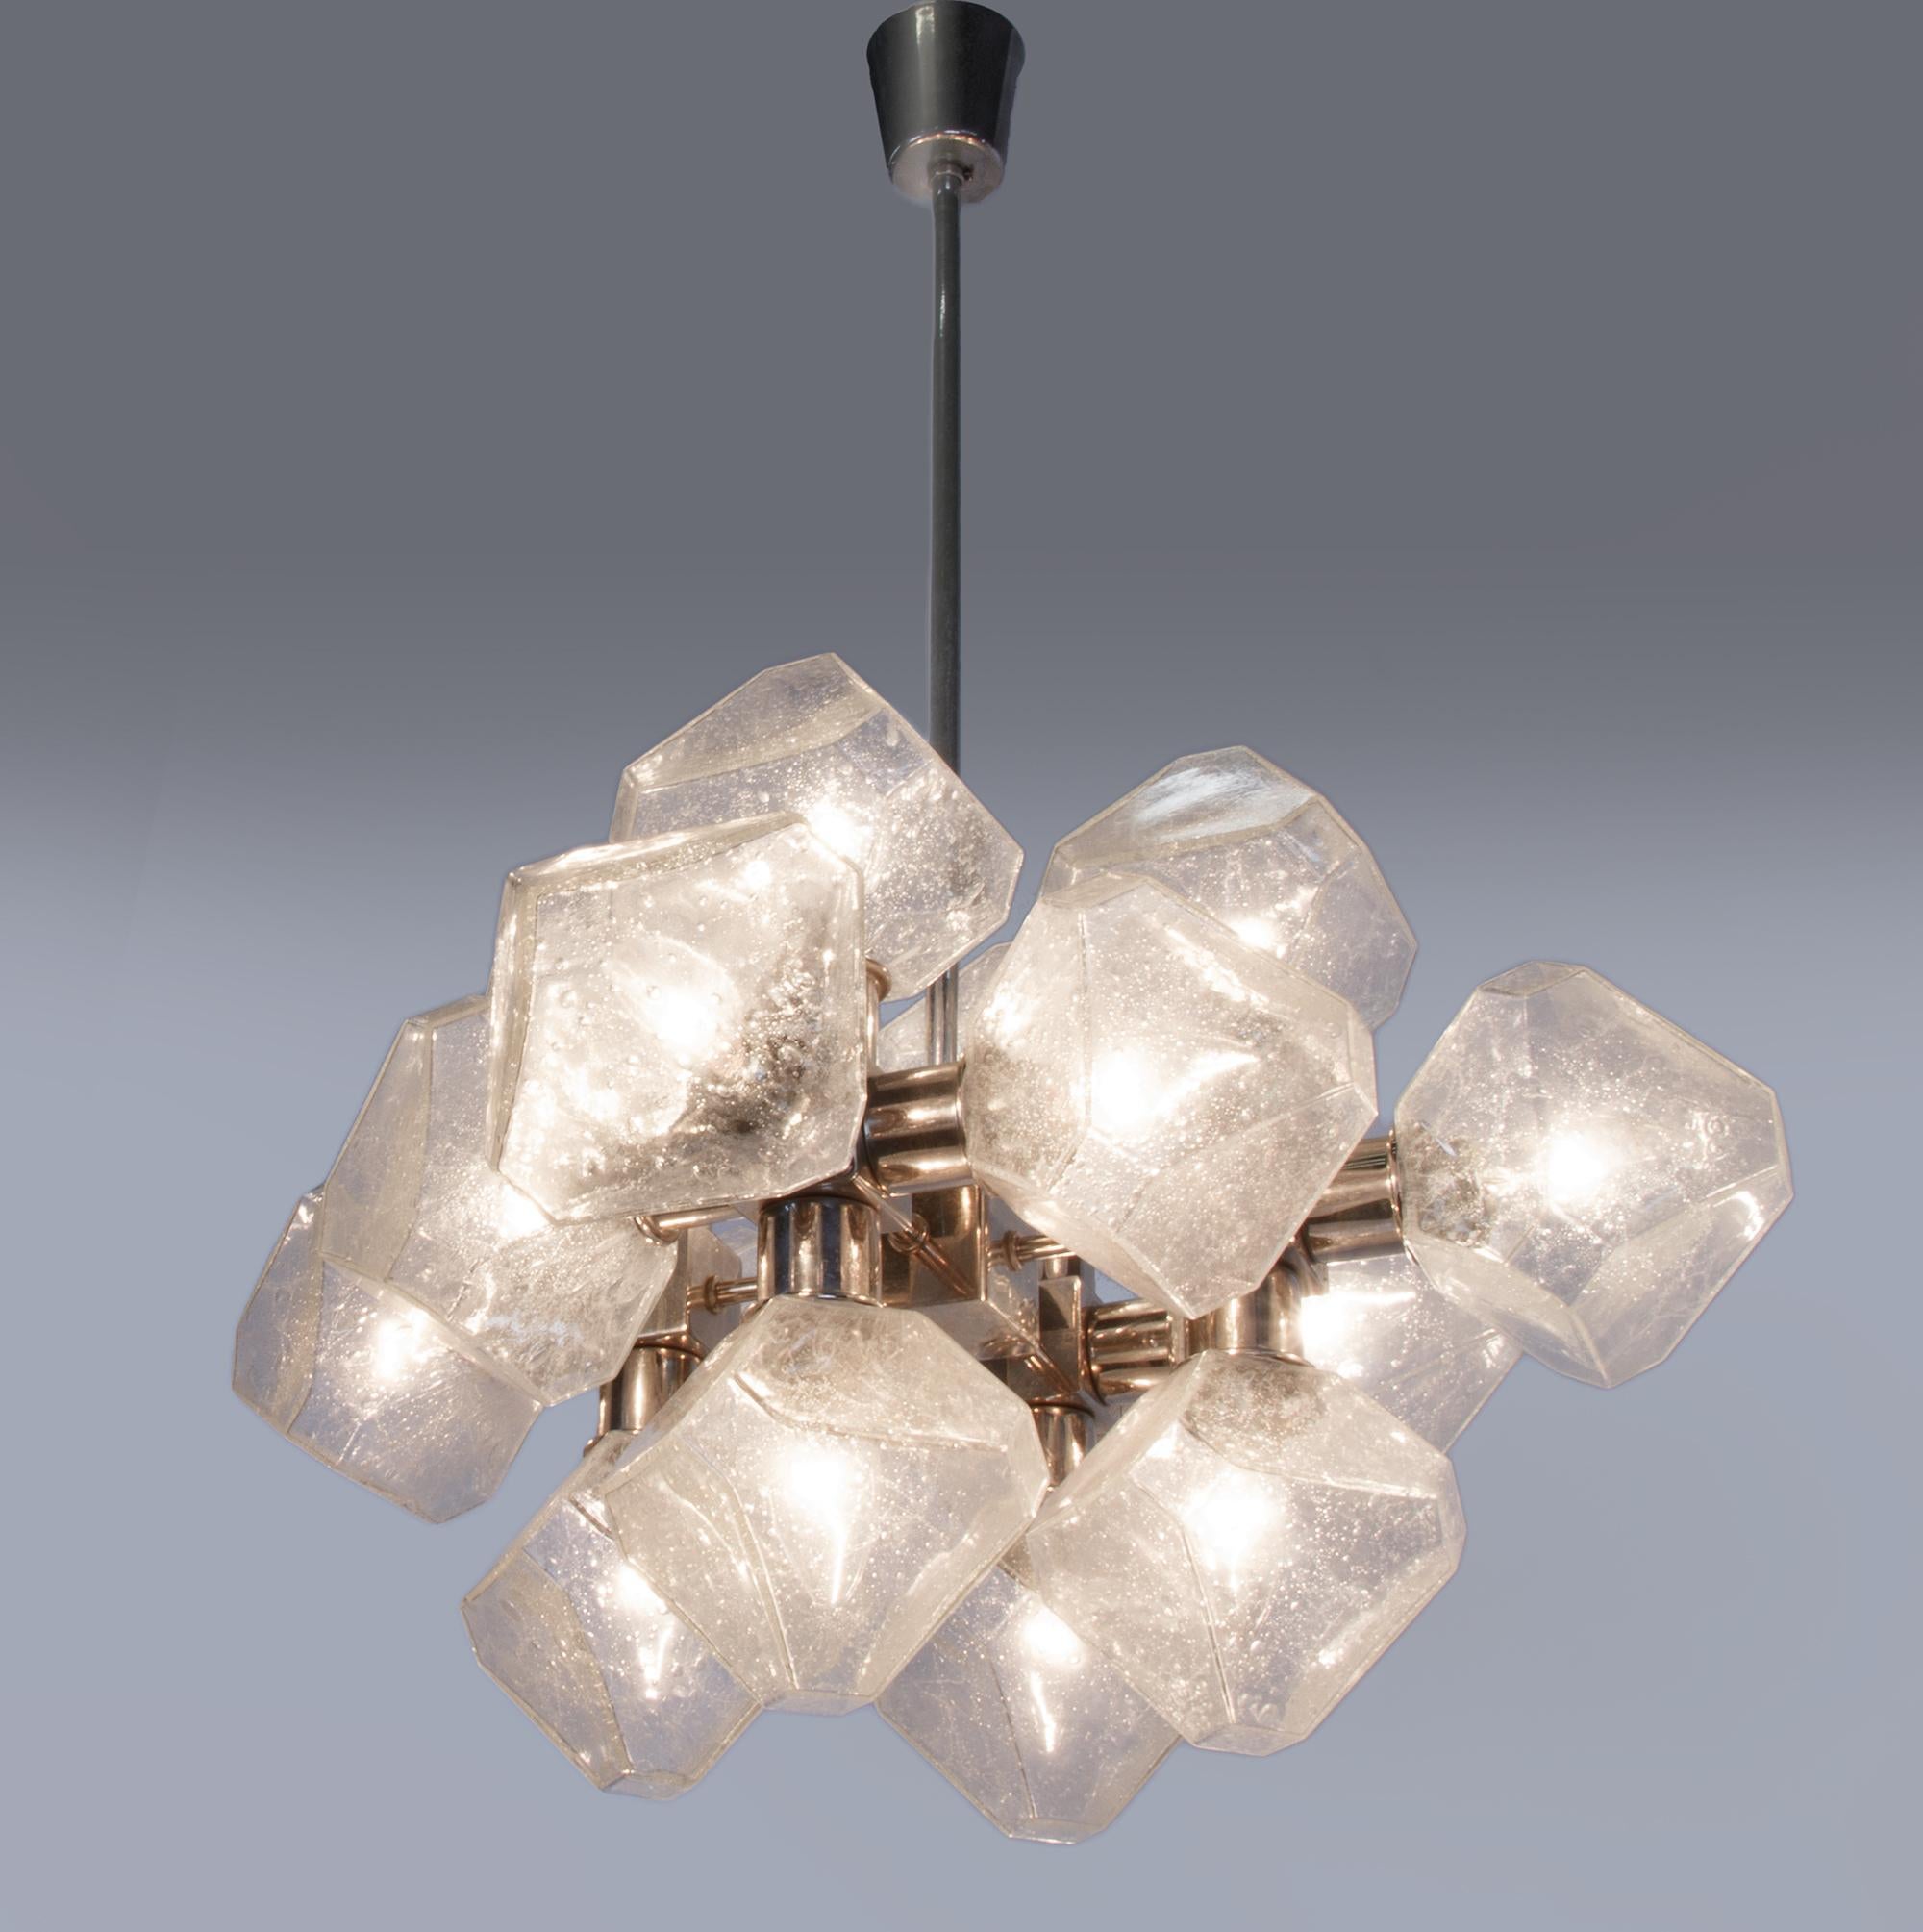 Hochwertige Lampe mit 16 Glaskörpern, hergestellt von Cosack, Deutschland in den 1960er Jahren. Der Kronleuchter ist aus verchromtem Metall und sehr schön geformtem Glas gefertigt. Das klare Glas hat kleine Lufteinschlüsse. Schmuckstück aus der